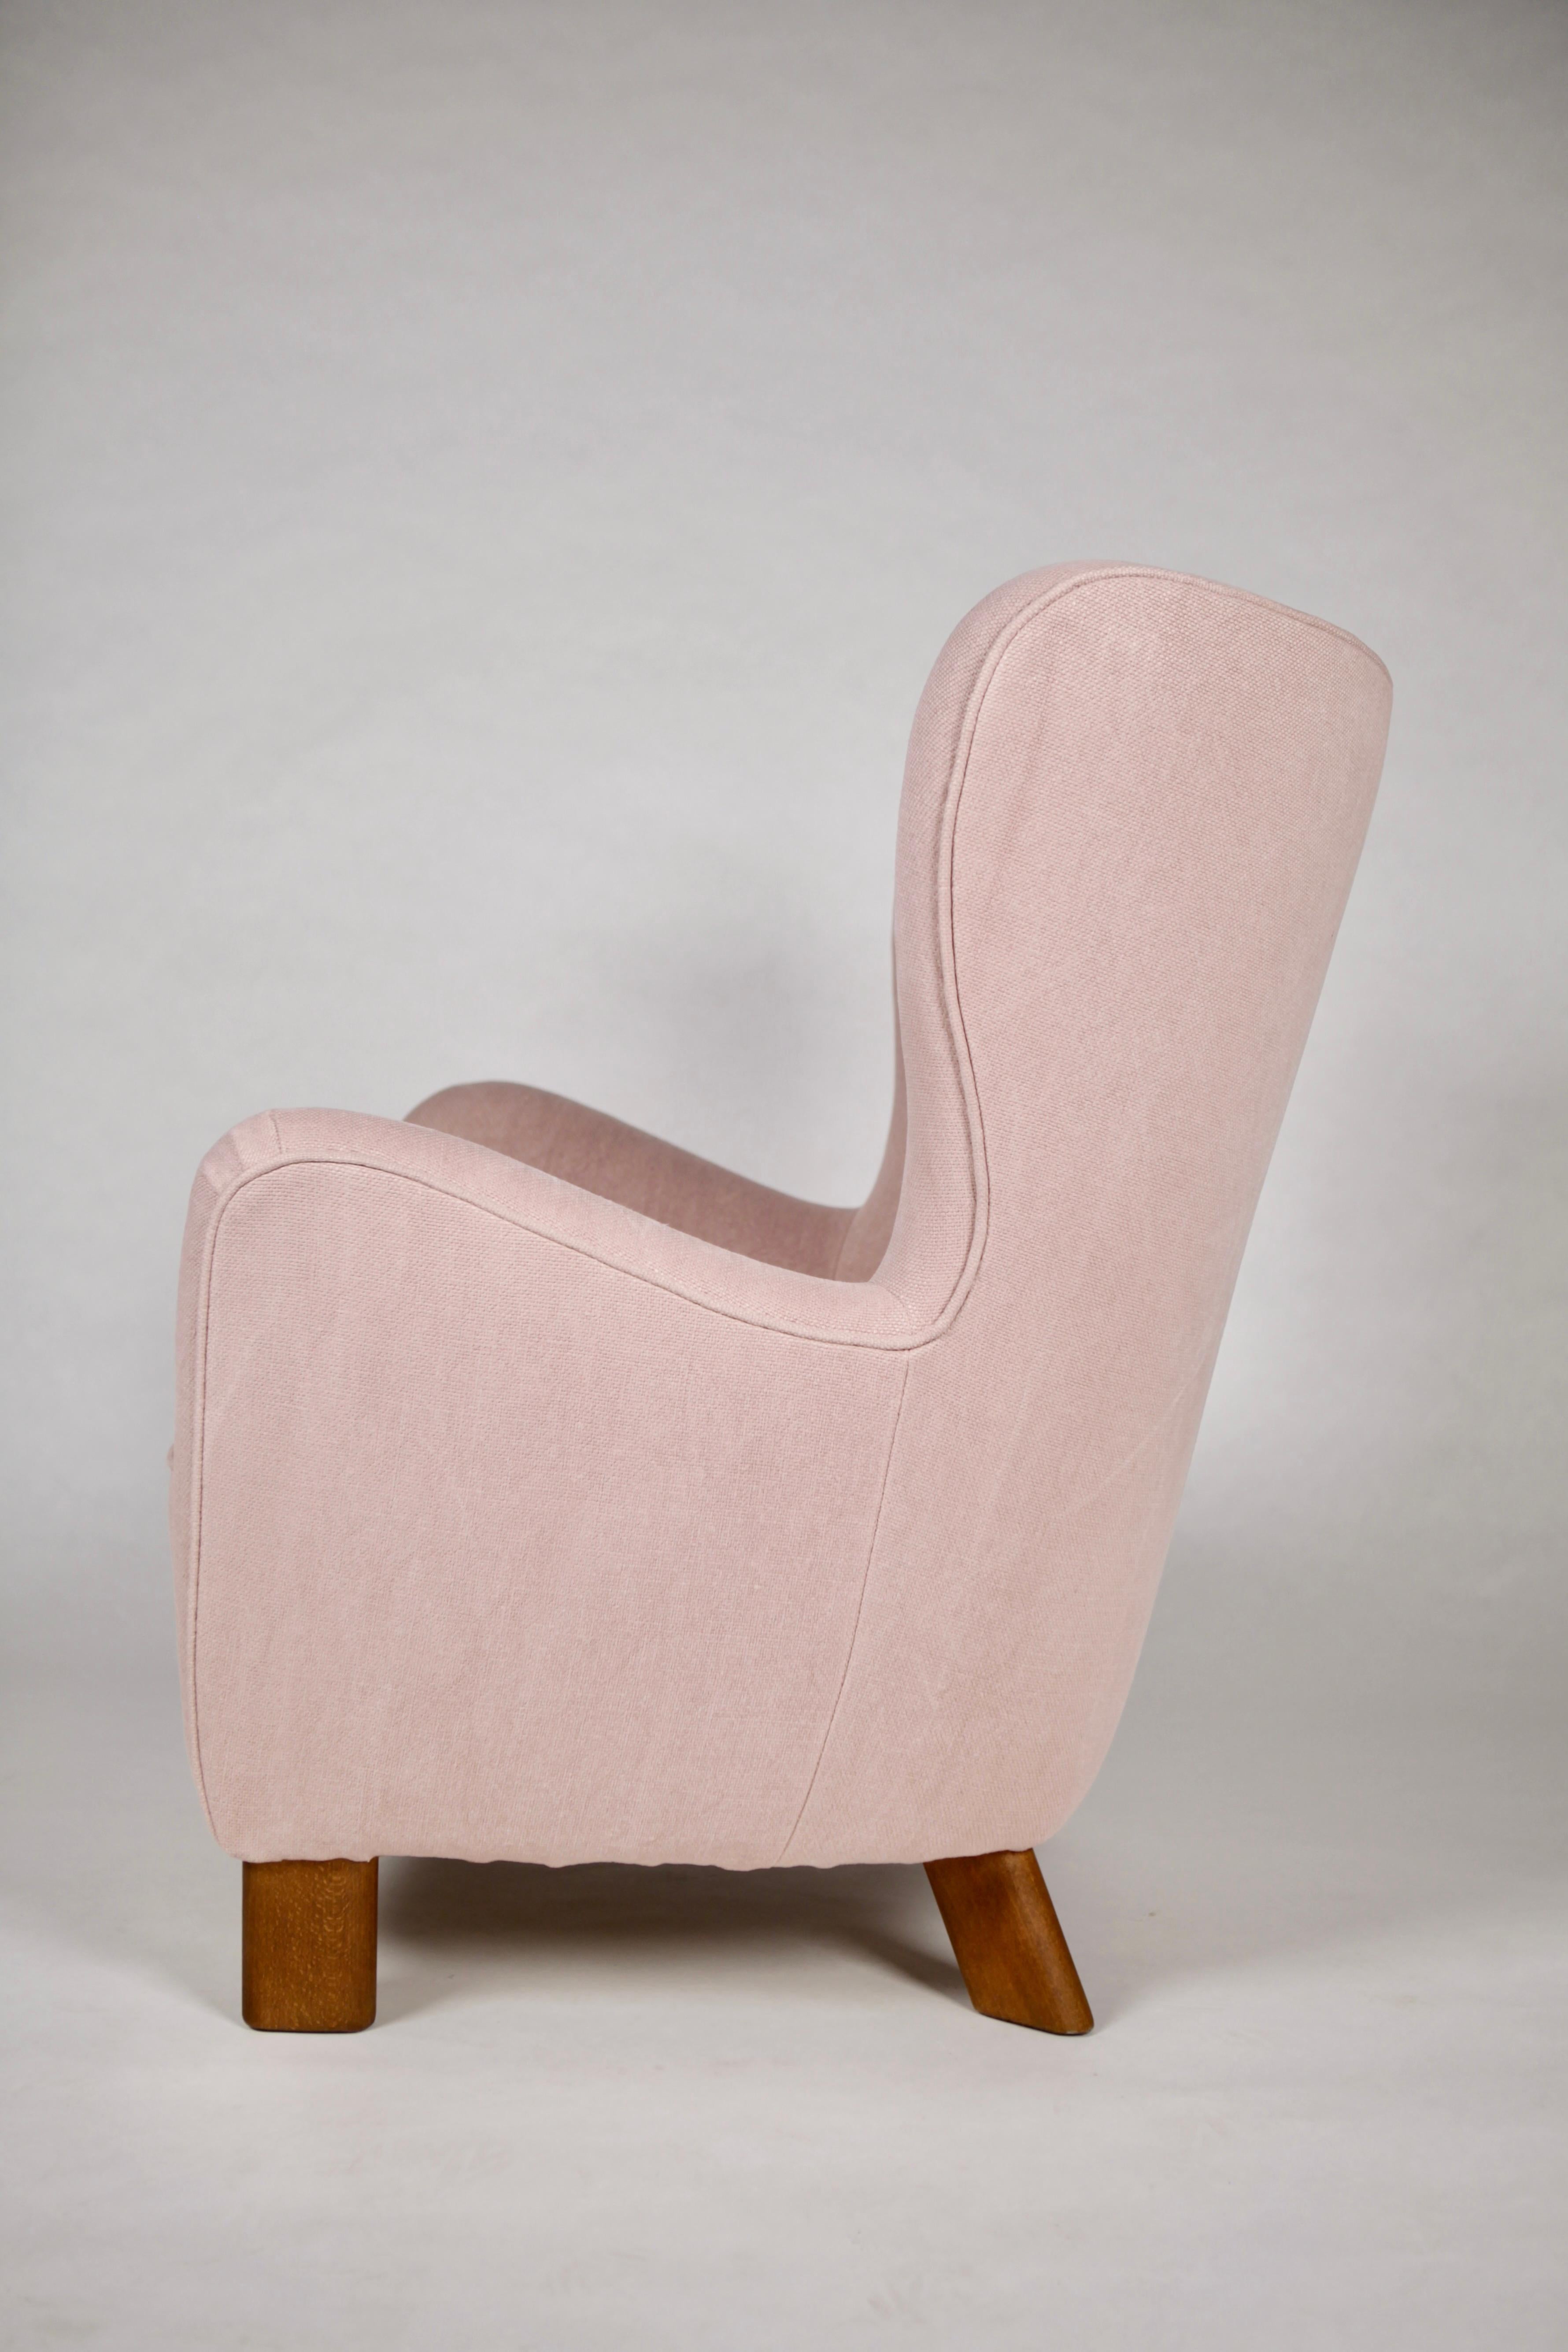 Rare version à haut dossier du fauteuil lounge 1669 de Fritz Hansen.
Conçu et fabriqué par Fritz Hansen,
Naturellement tapissé de lin brut de couleur rose pâle,
Danemark, 1940.
  